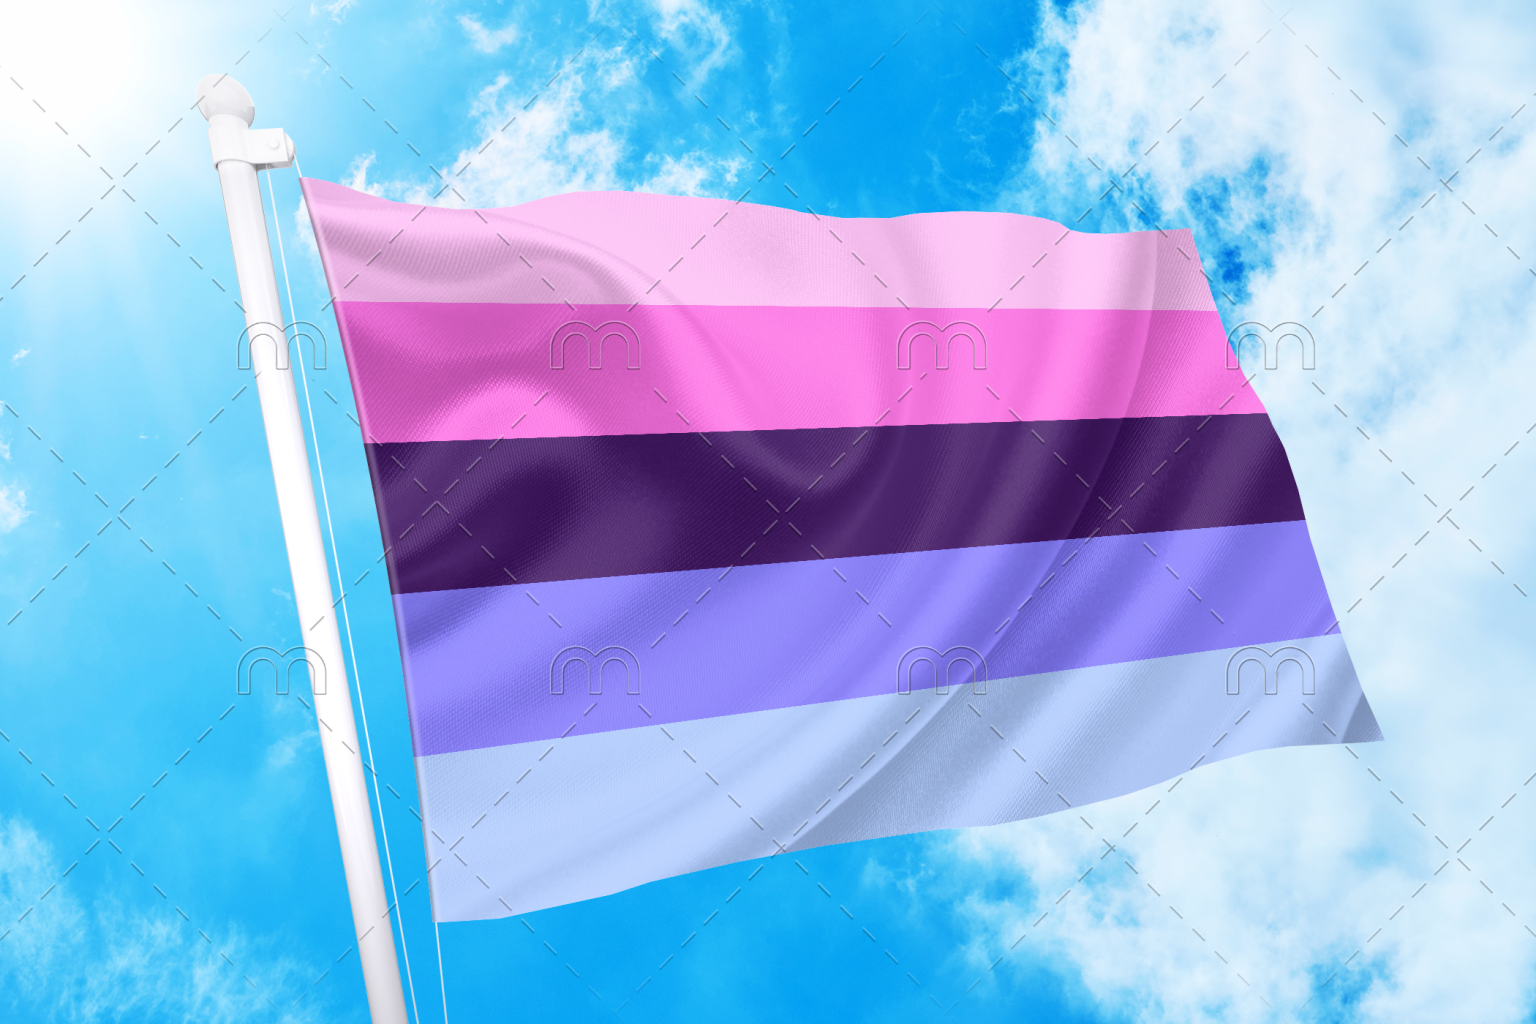 Omni Pride Flag Omnisexual Pn0112 Transgender Flags 7237